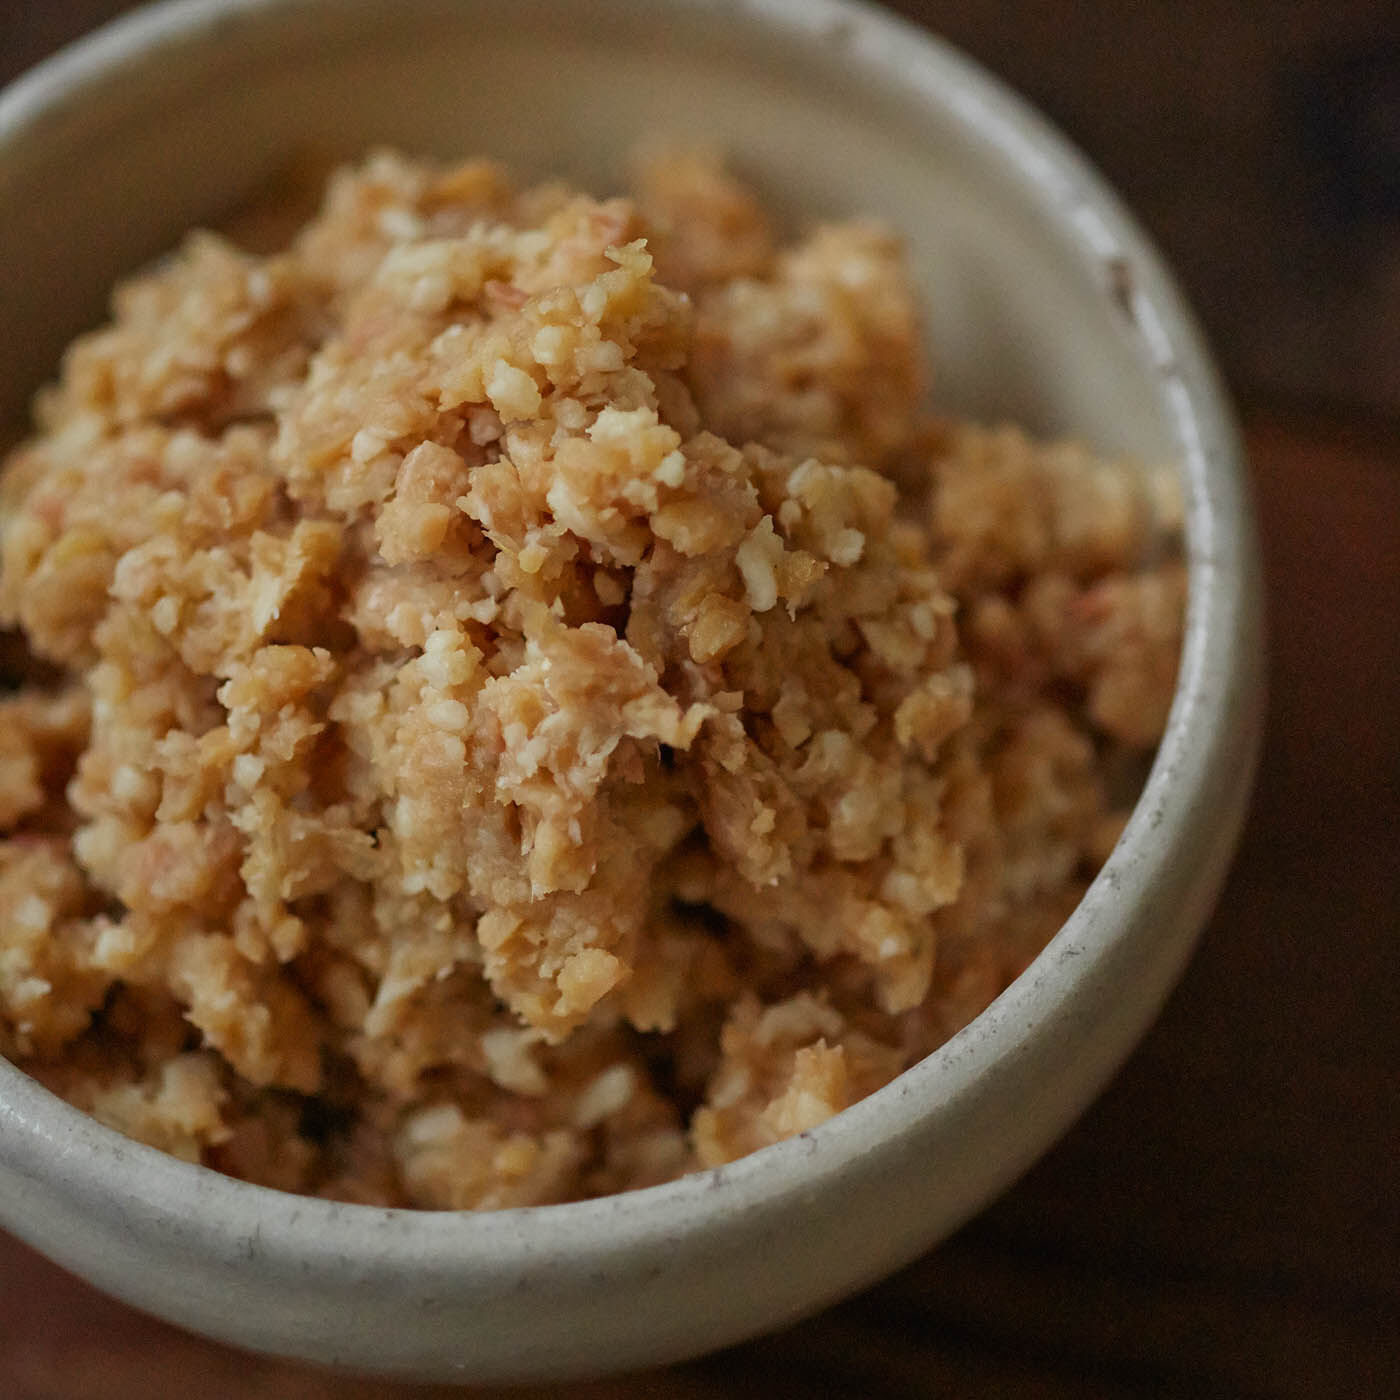 Natucul Chou Club|熊本貝島商店の米みそキット|米みそとは、大豆に米こうじを加えて作ったみそです。おみそ汁はいつまでも懐かしい味、ですよね。